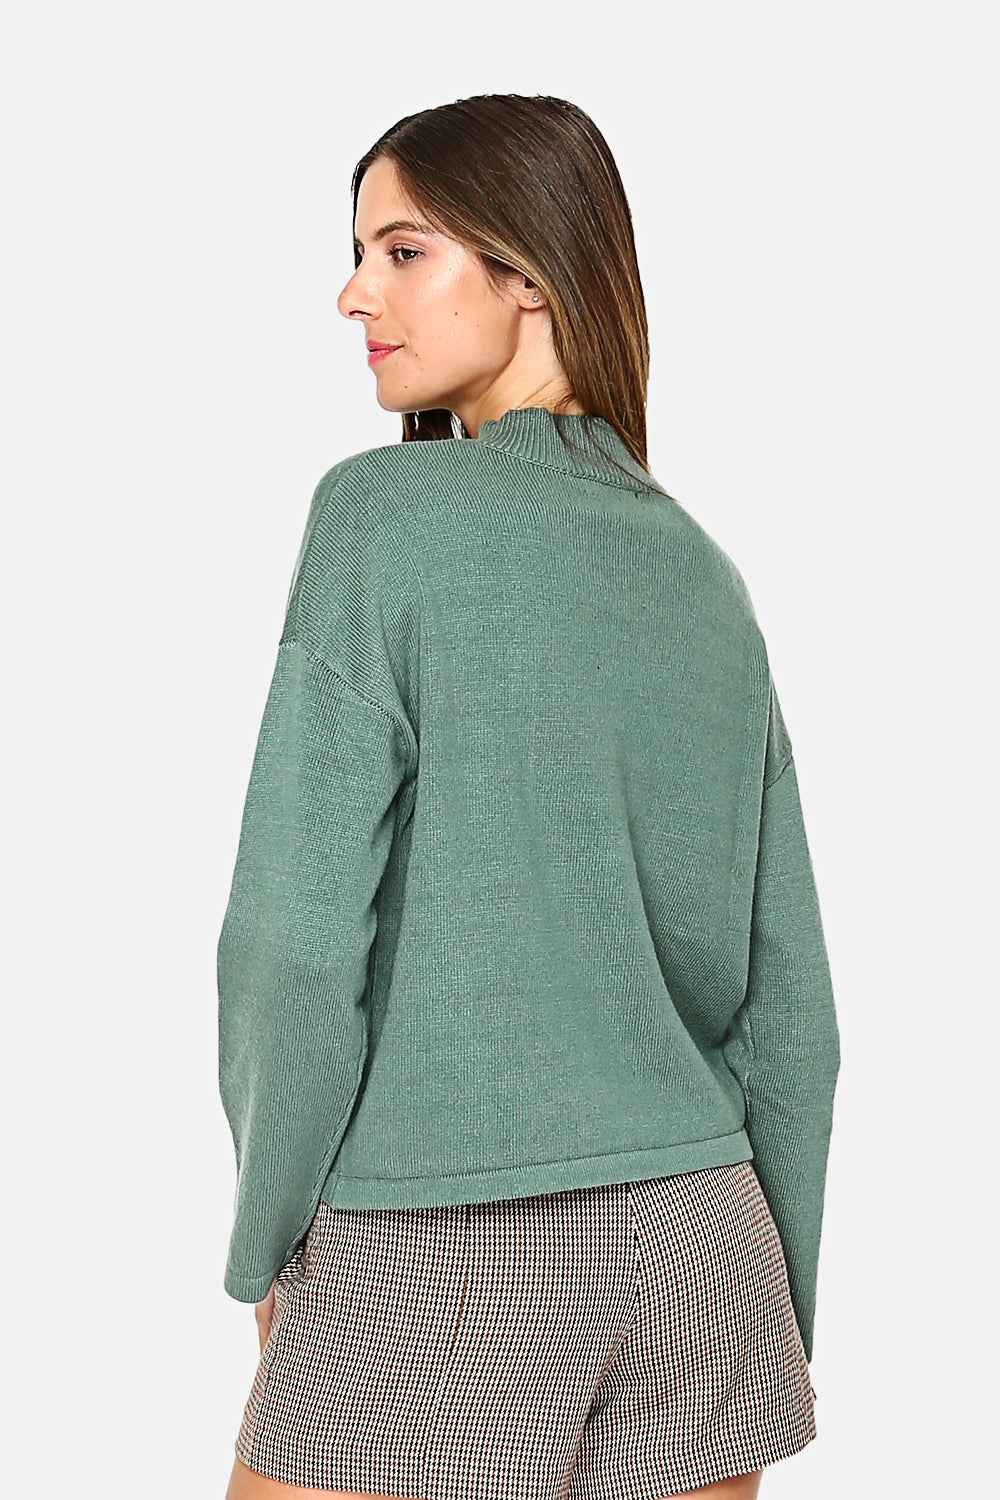 Pullover mit hohem Kragen und Knöpfen an den Ärmeln